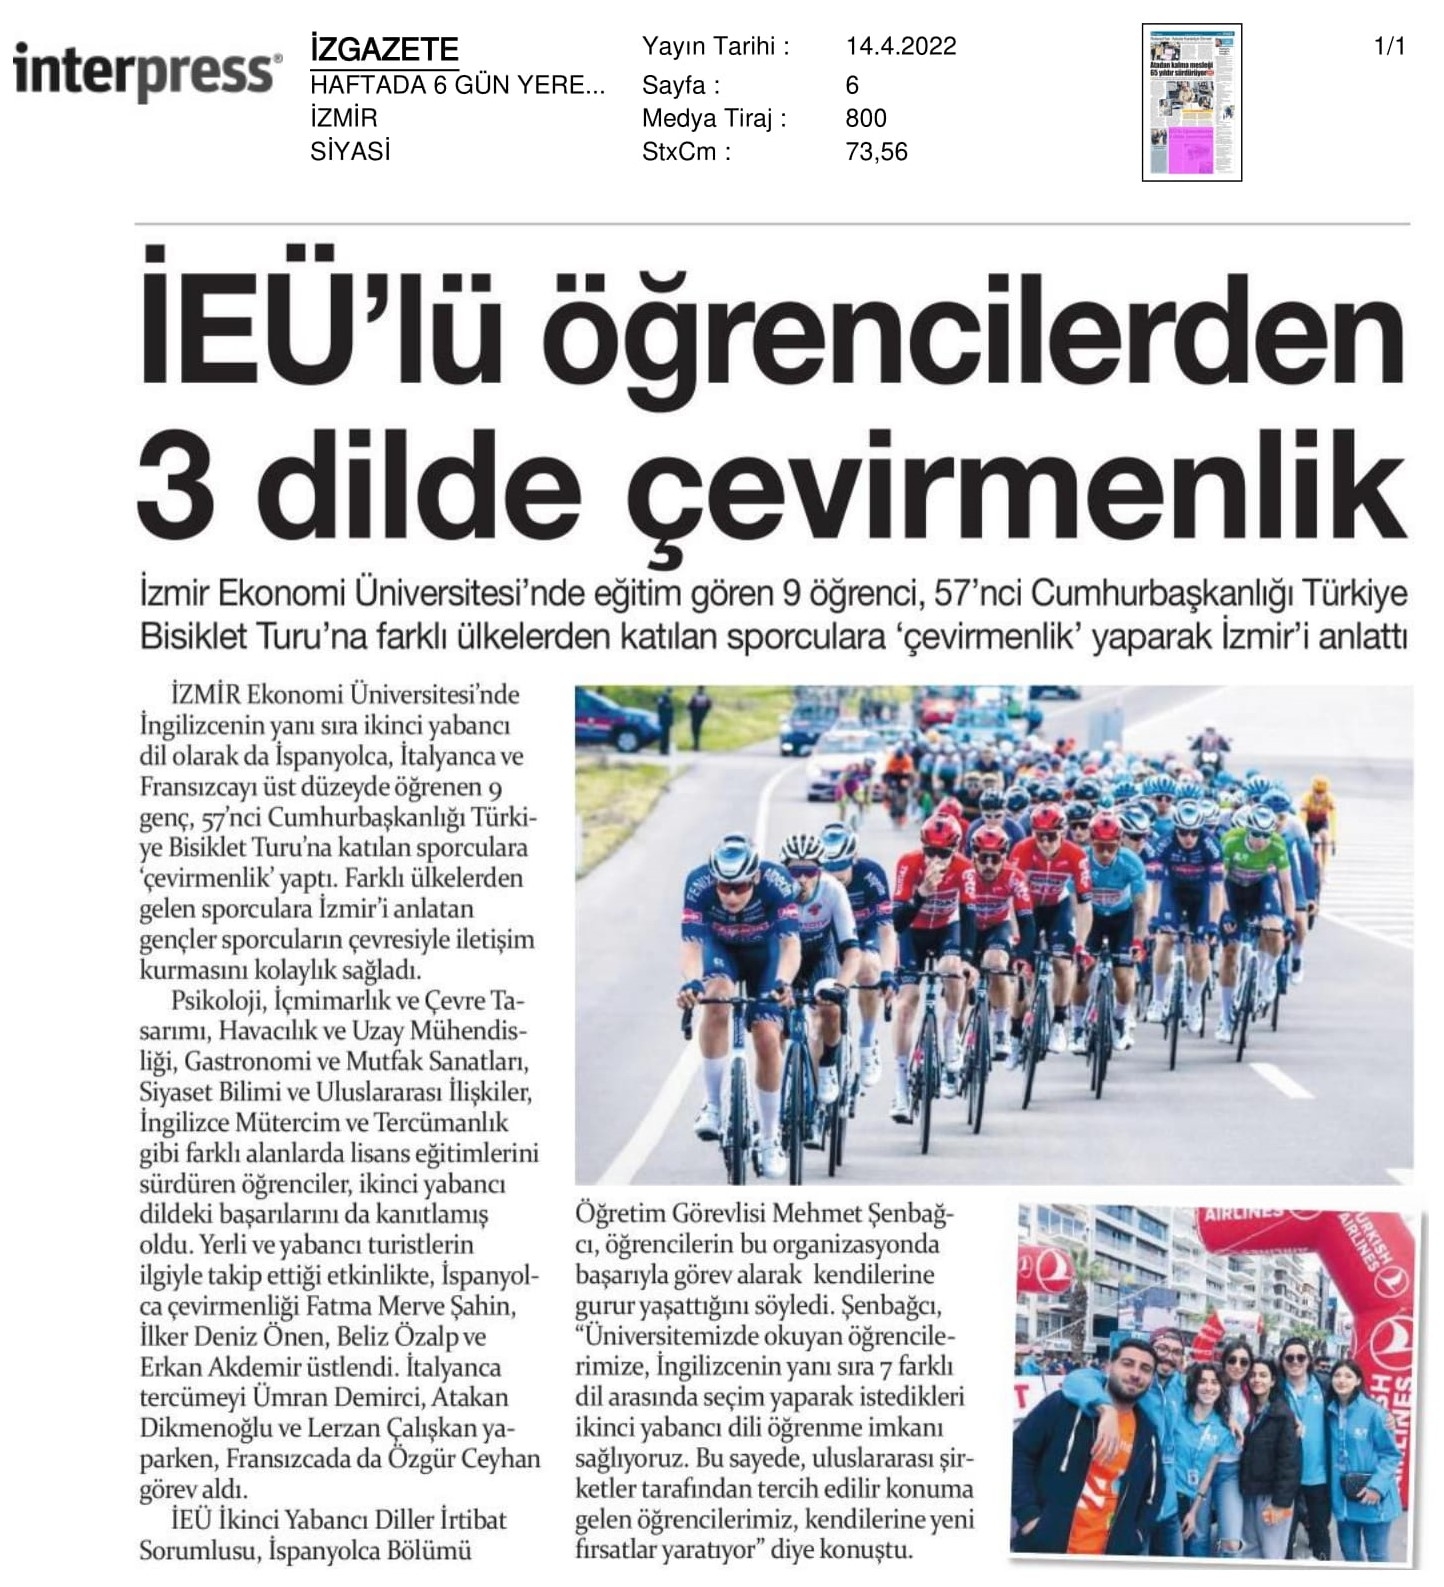 Bisiklet Turu’nda ‘İzmir Ekonomi’ gururu